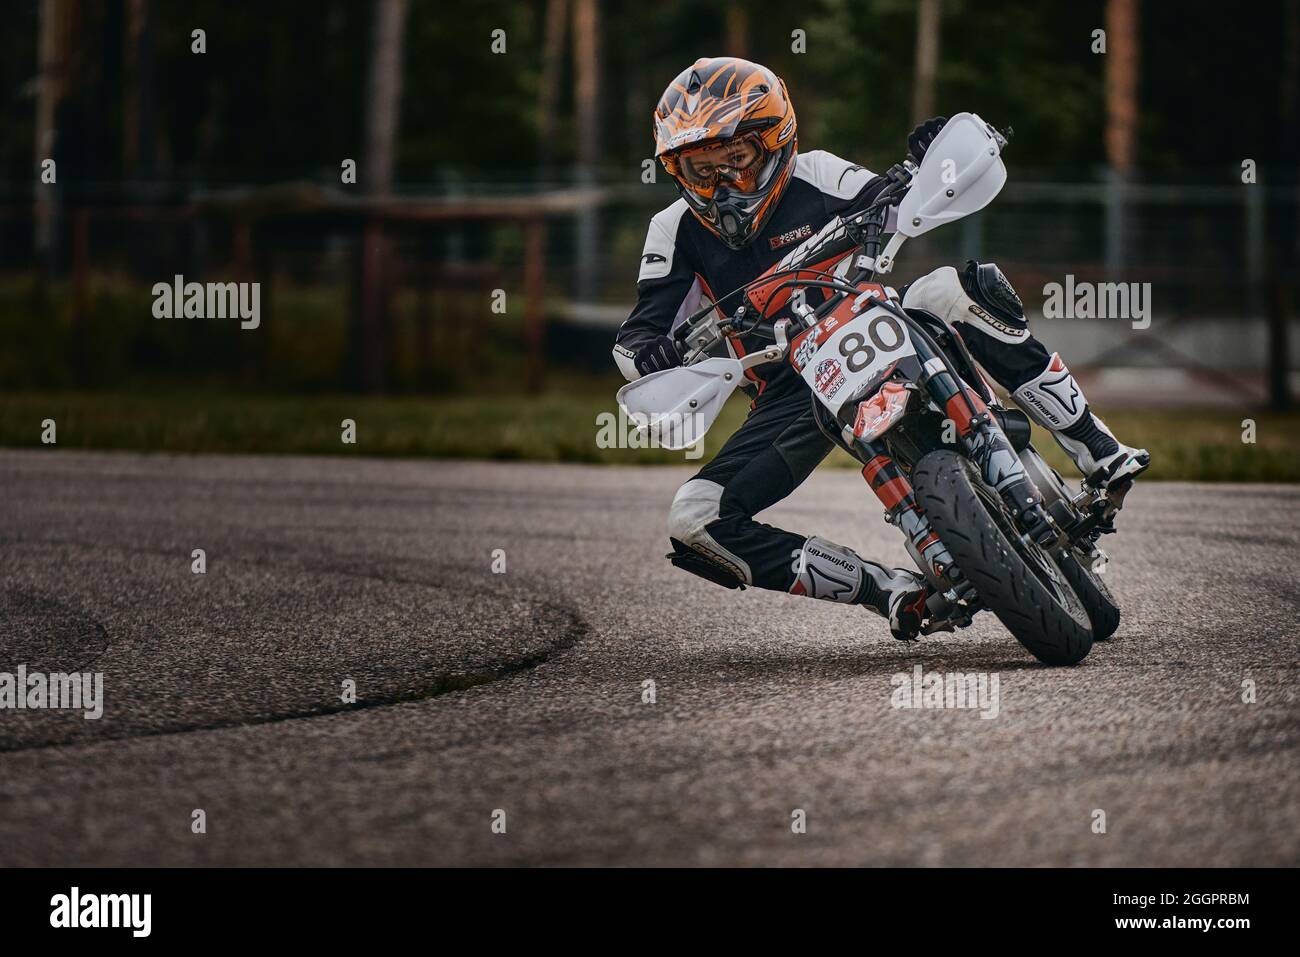 10-05-2021 Lituanie, Kaunas MotoGP pilote, moto-cycliste à vélo de sport rapide. Banque D'Images